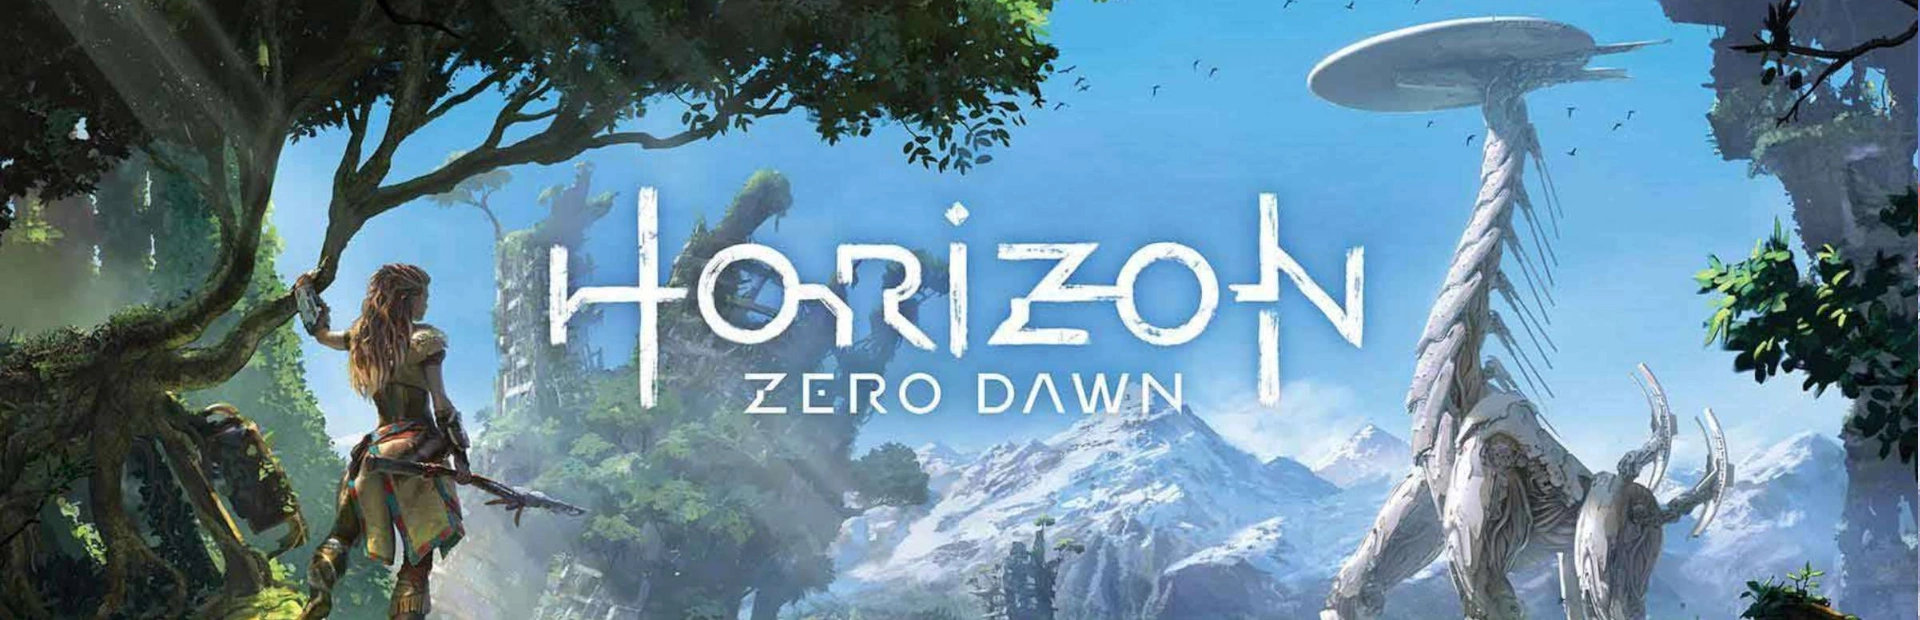 دانلود بازی Horizon Zero Dawn برای کامپیوتر | گیمباتو